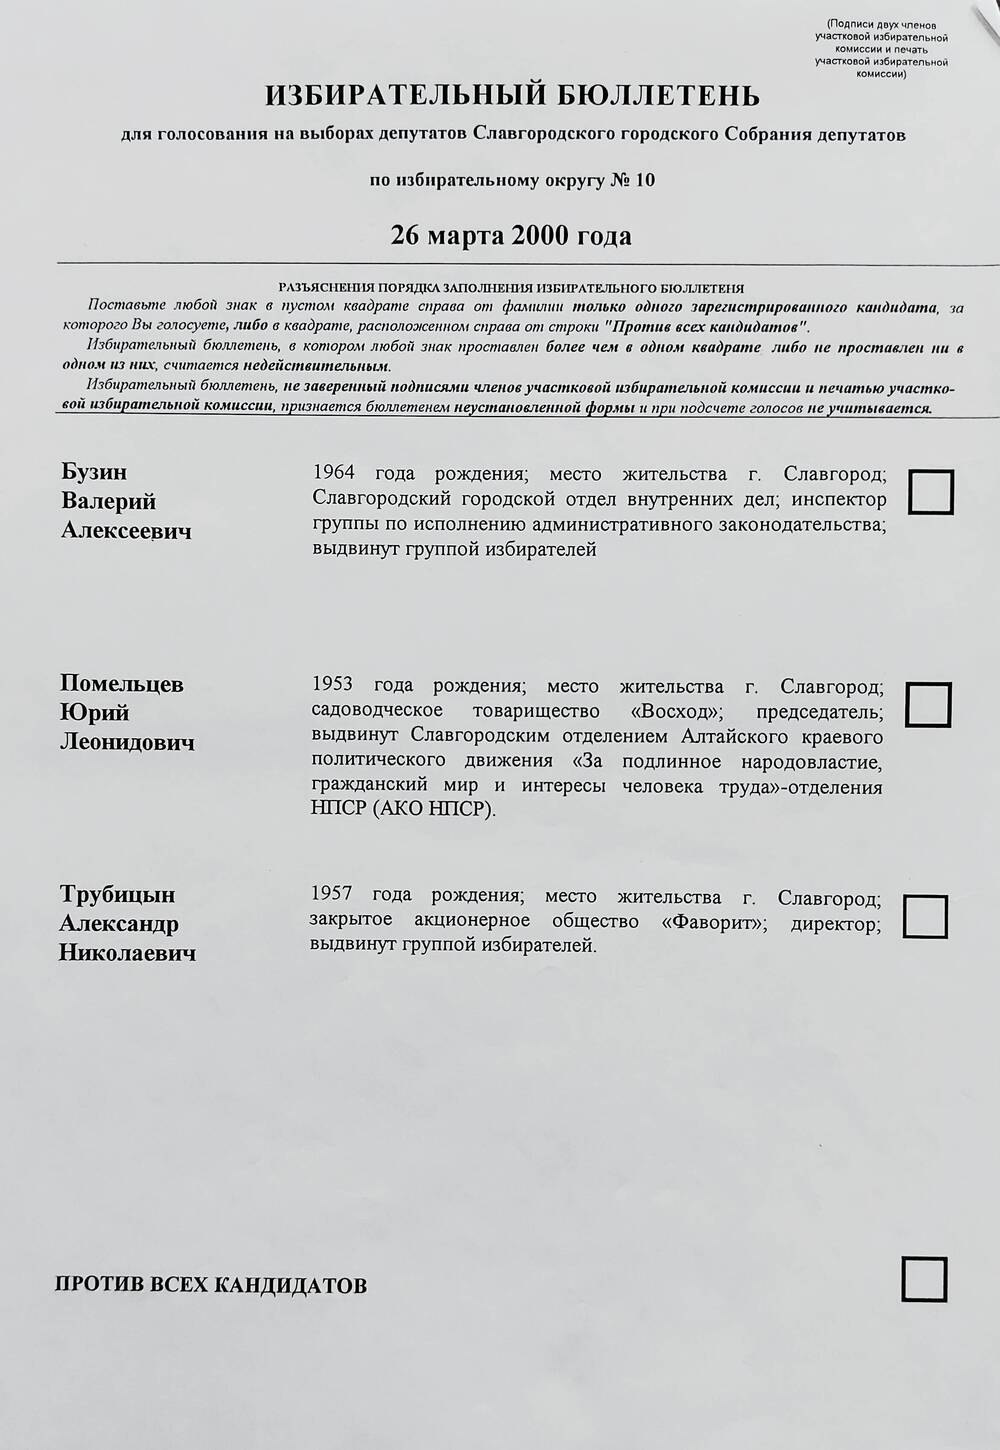 Бюллетень избирательный для голосования на выборах депутатов Славгородского городского Собрания депутатов по избирательному округу № 10 от 26 марта 2000 года.